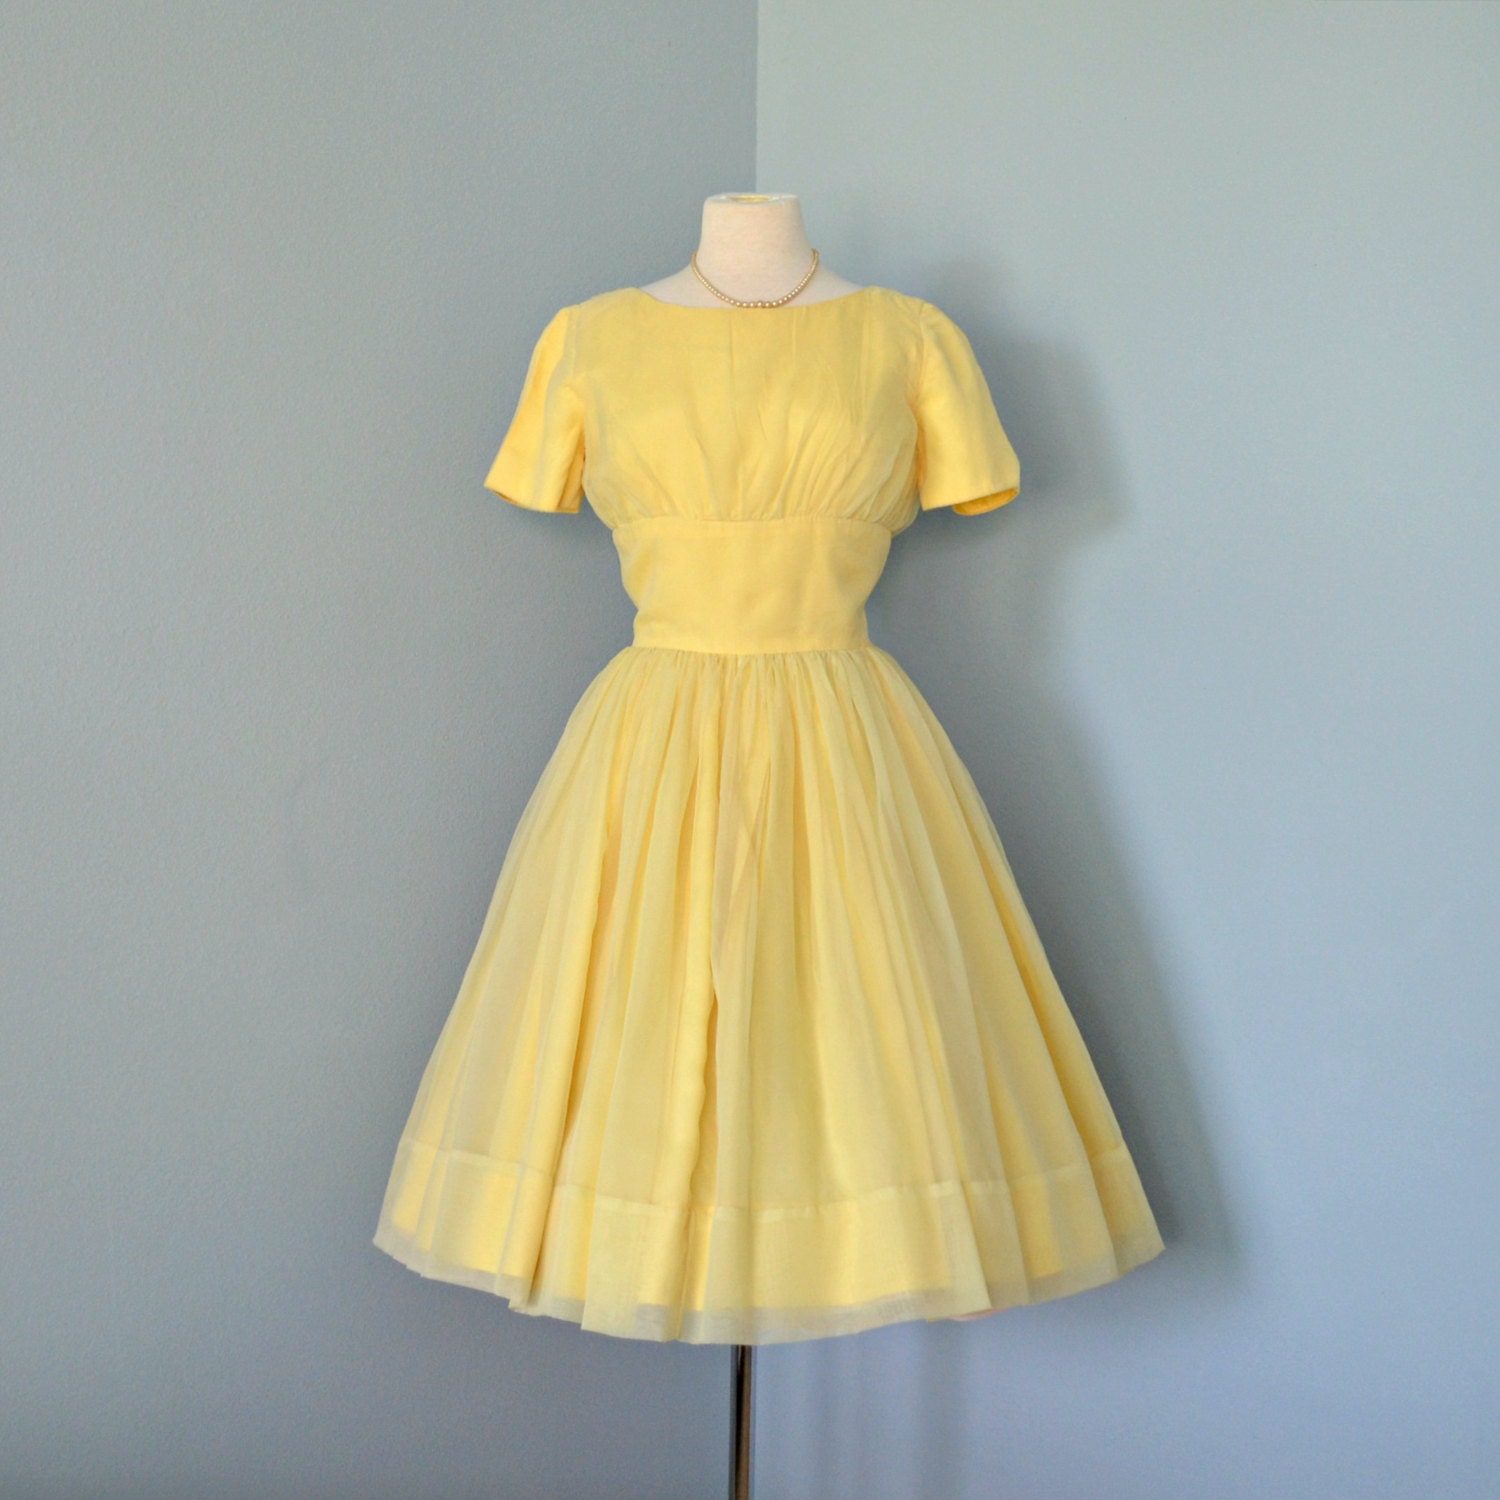 Pastel Wedding Dress Cheerful Canary Yellow Chiffon Party Dress